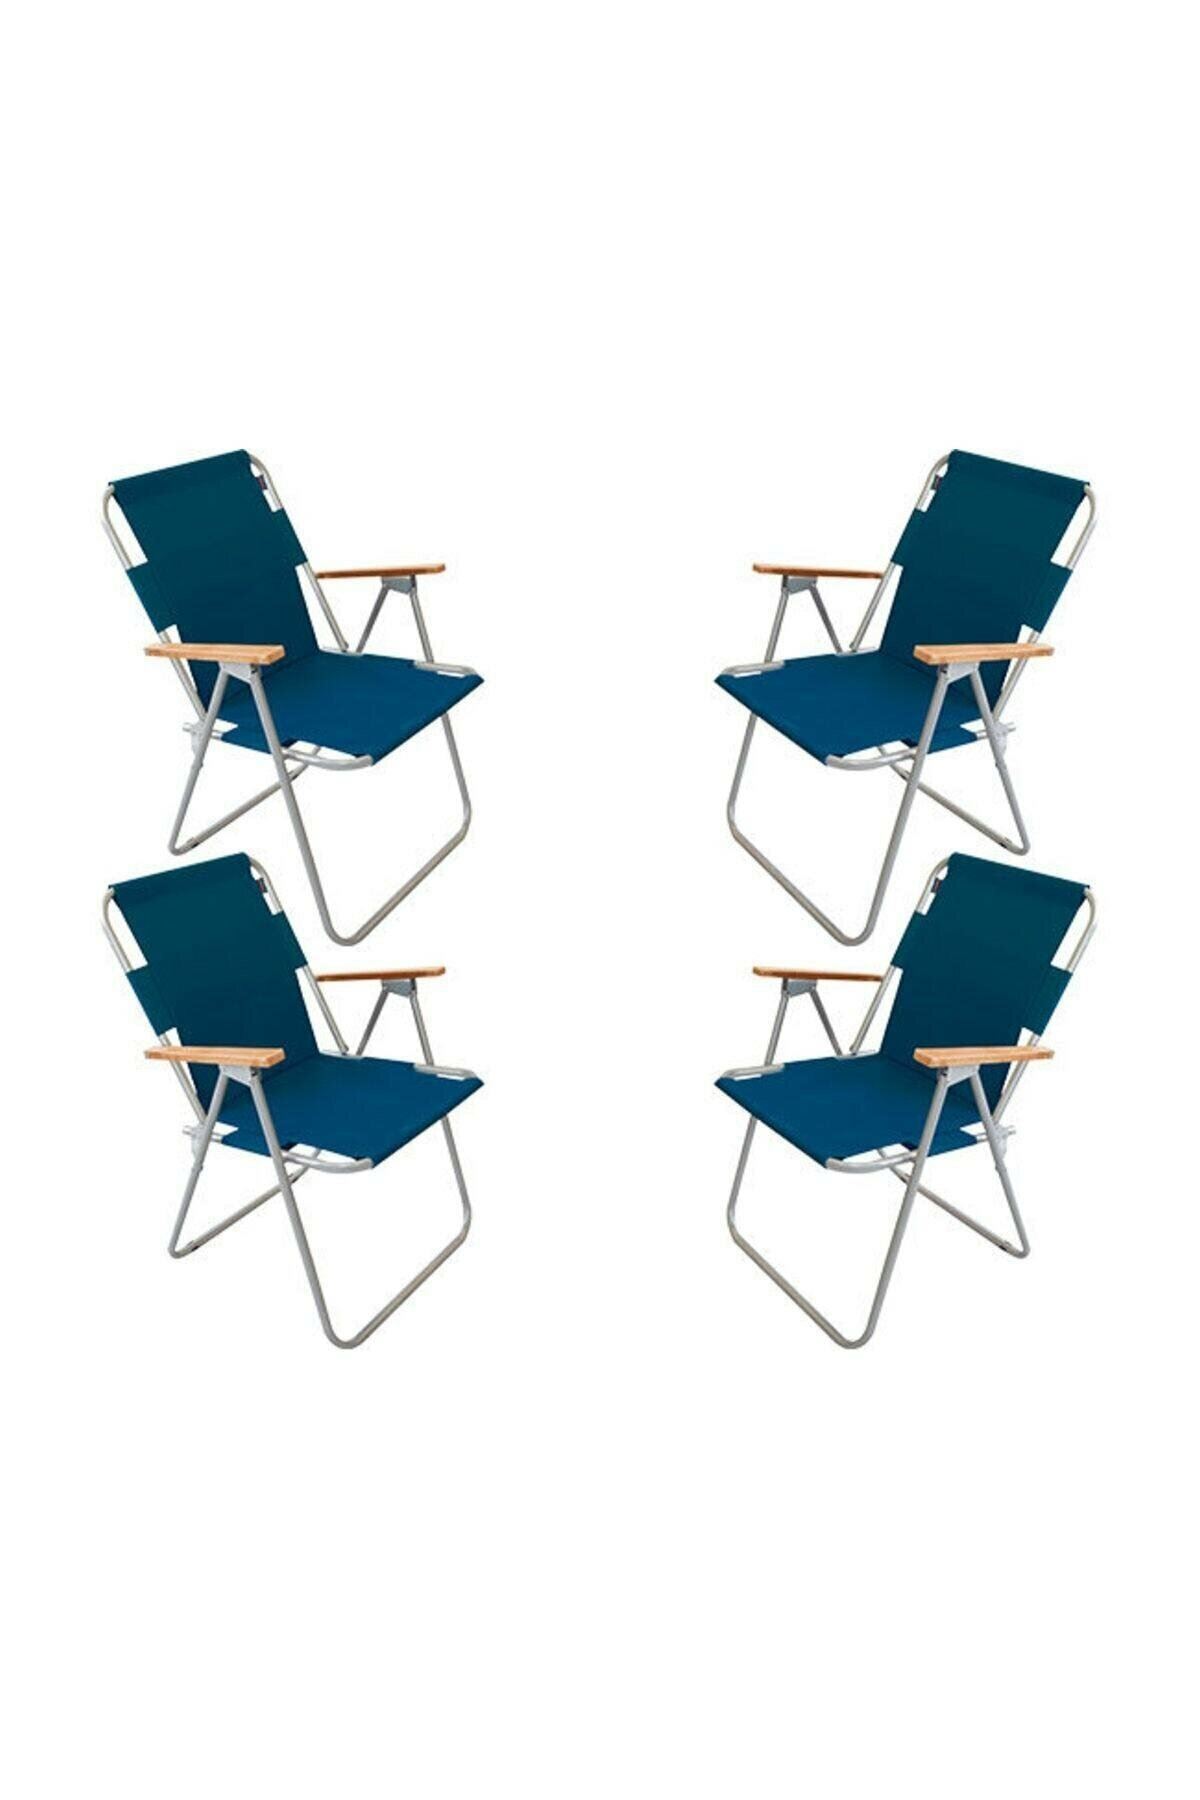 Bofigo 60x80 Çam Katlanır Masa + 4 Adet Katlanır Sandalye Kamp Seti Bahçe Balkon Takımı Mavi